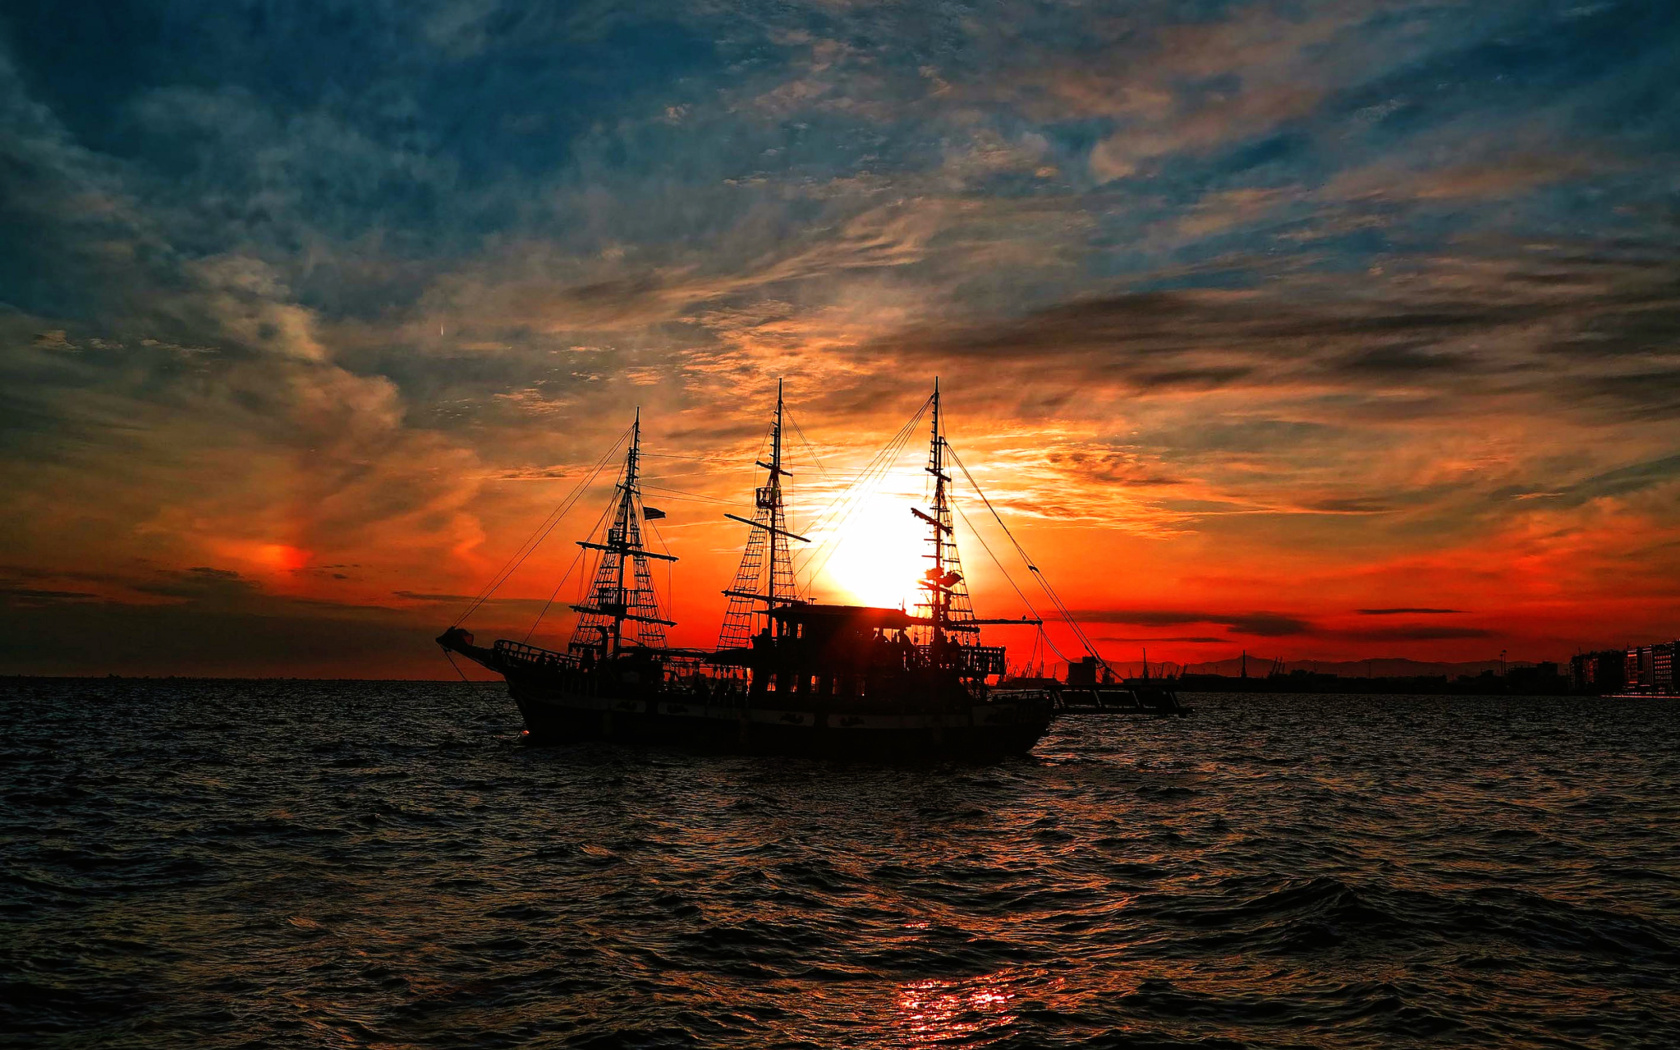 Обои Ship in sunset 1680x1050